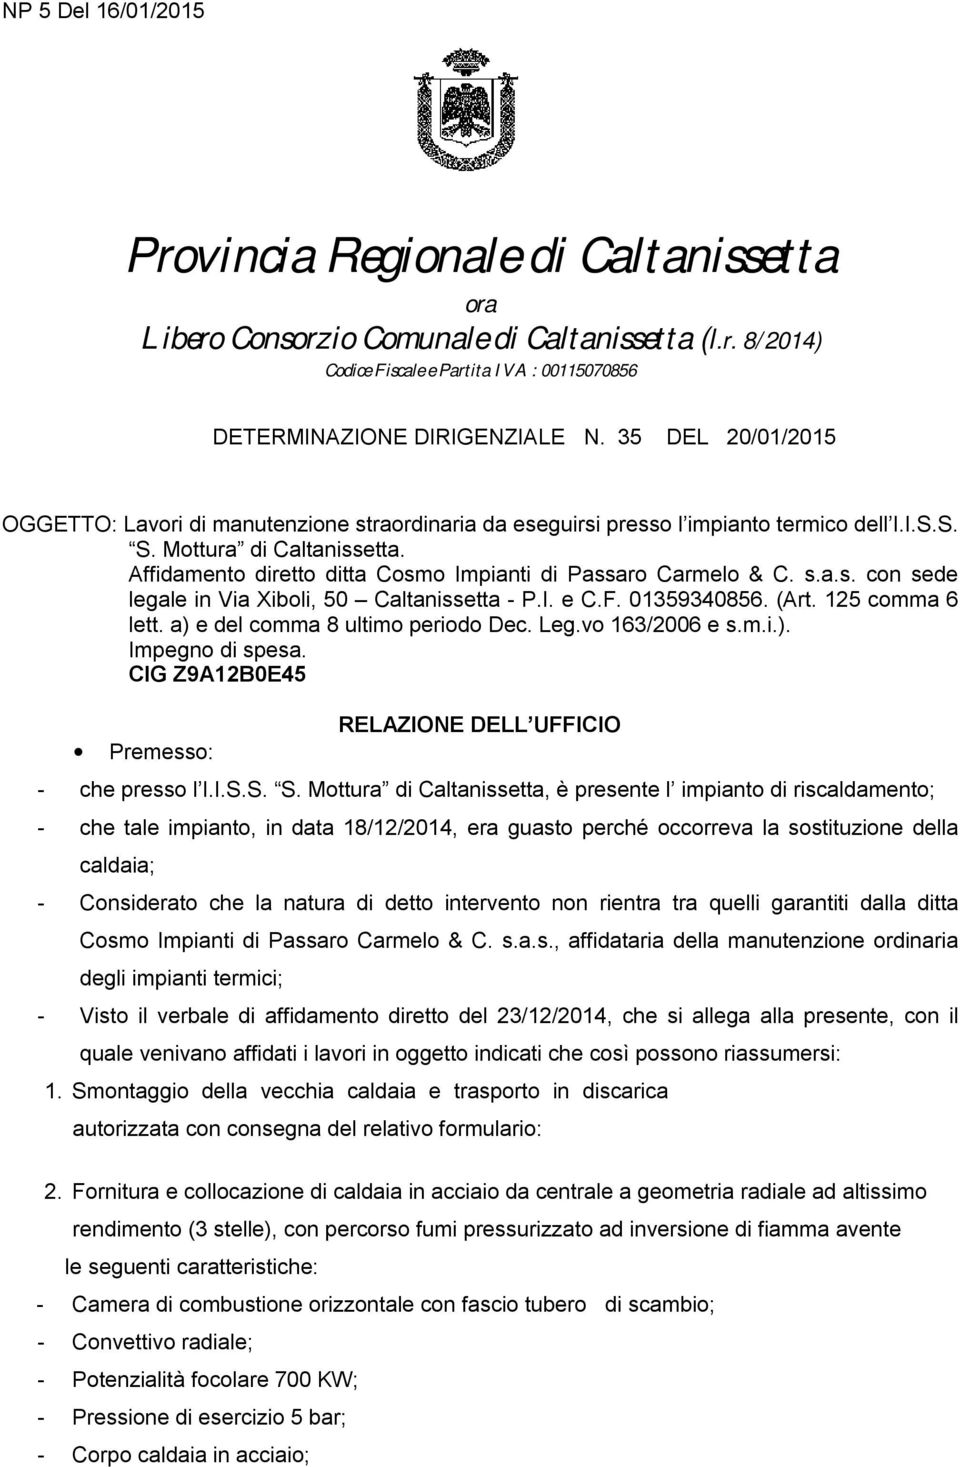 Affidamento diretto ditta Cosmo Impianti di Passaro Carmelo & C. s.a.s. con sede legale in Via Xiboli, 50 Caltanissetta - P.I. e C.F. 01359340856. (Art. 125 comma 6 lett.